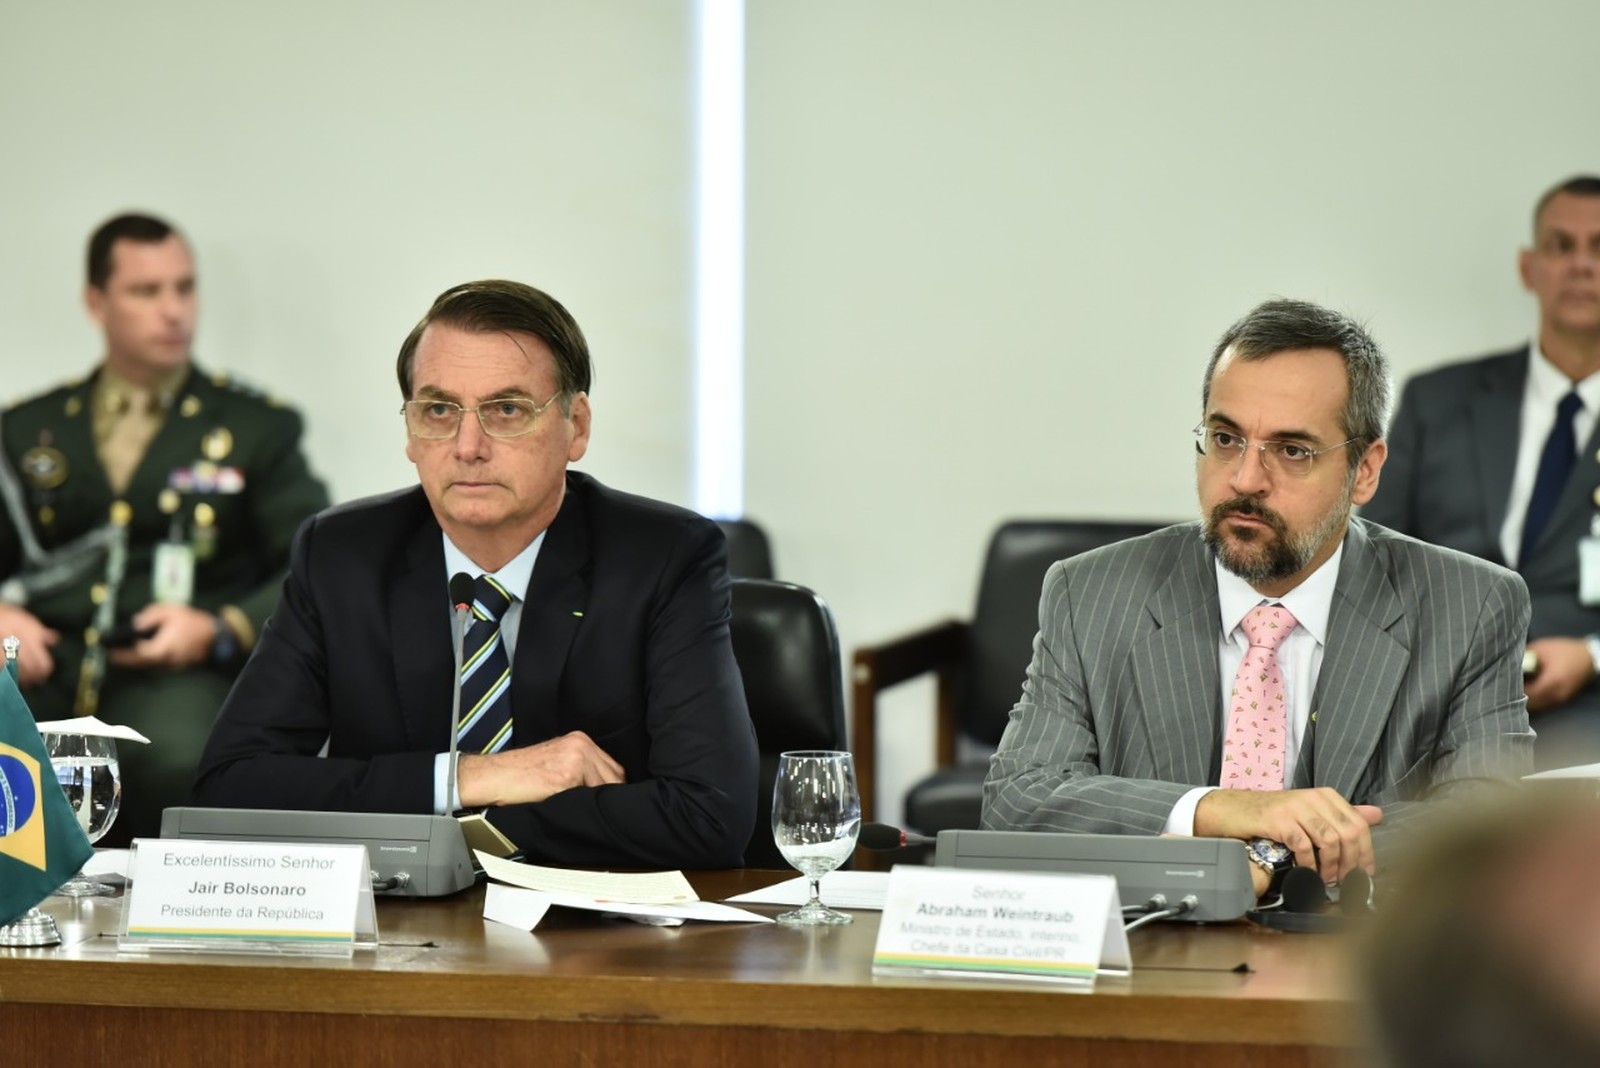 Bolsonaro vai dar posse ao novo ministro da Educação, Abraham Weintraub, na tarde desta terça (9) em uma cerimônia no Palácio do Planalto — Foto: Casa Civil, PR